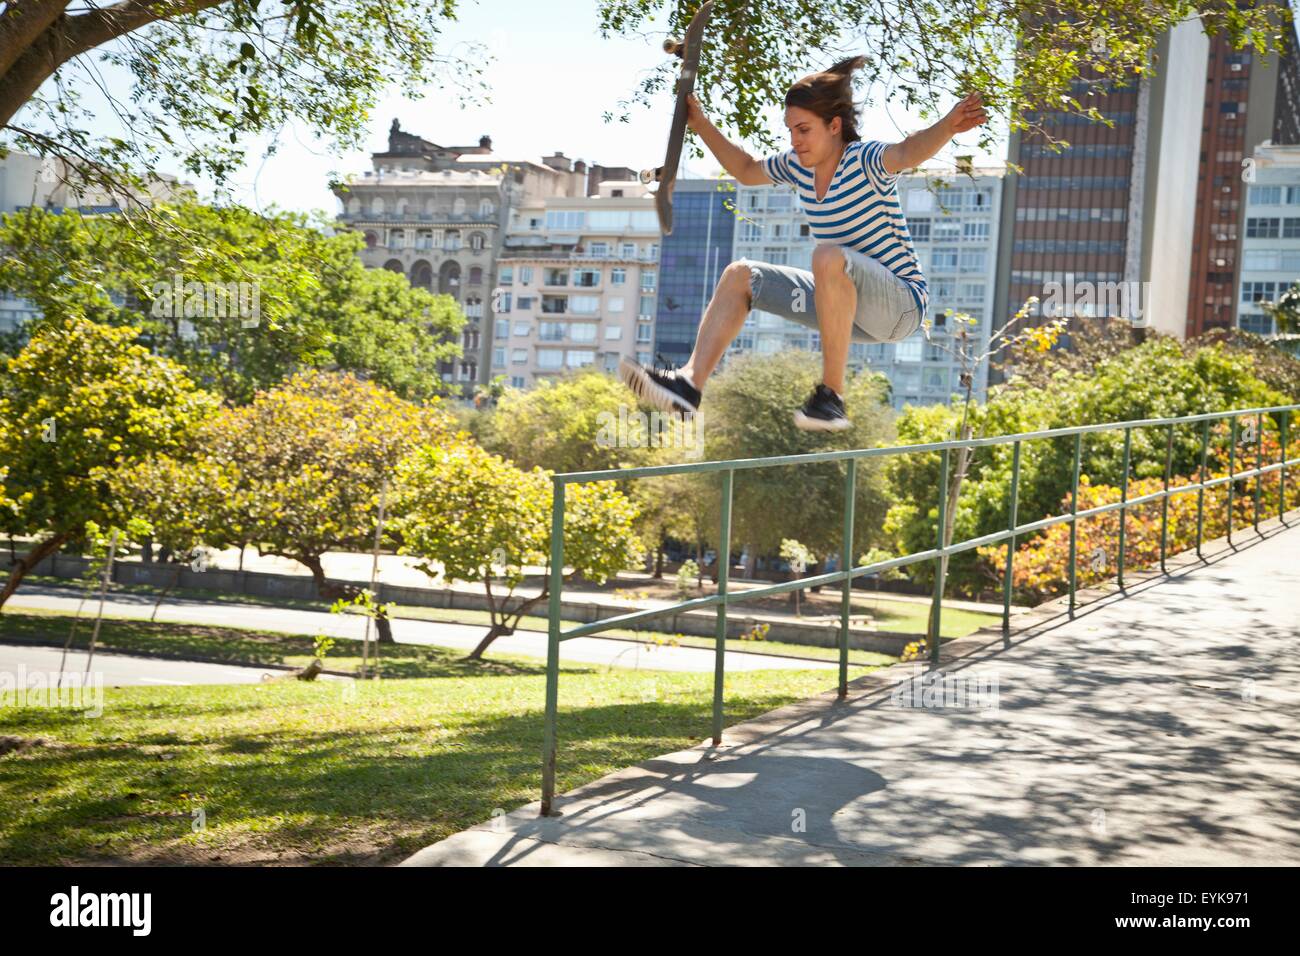 Junger Mann tun Skateboard Sprung auf Geländer Stockfoto